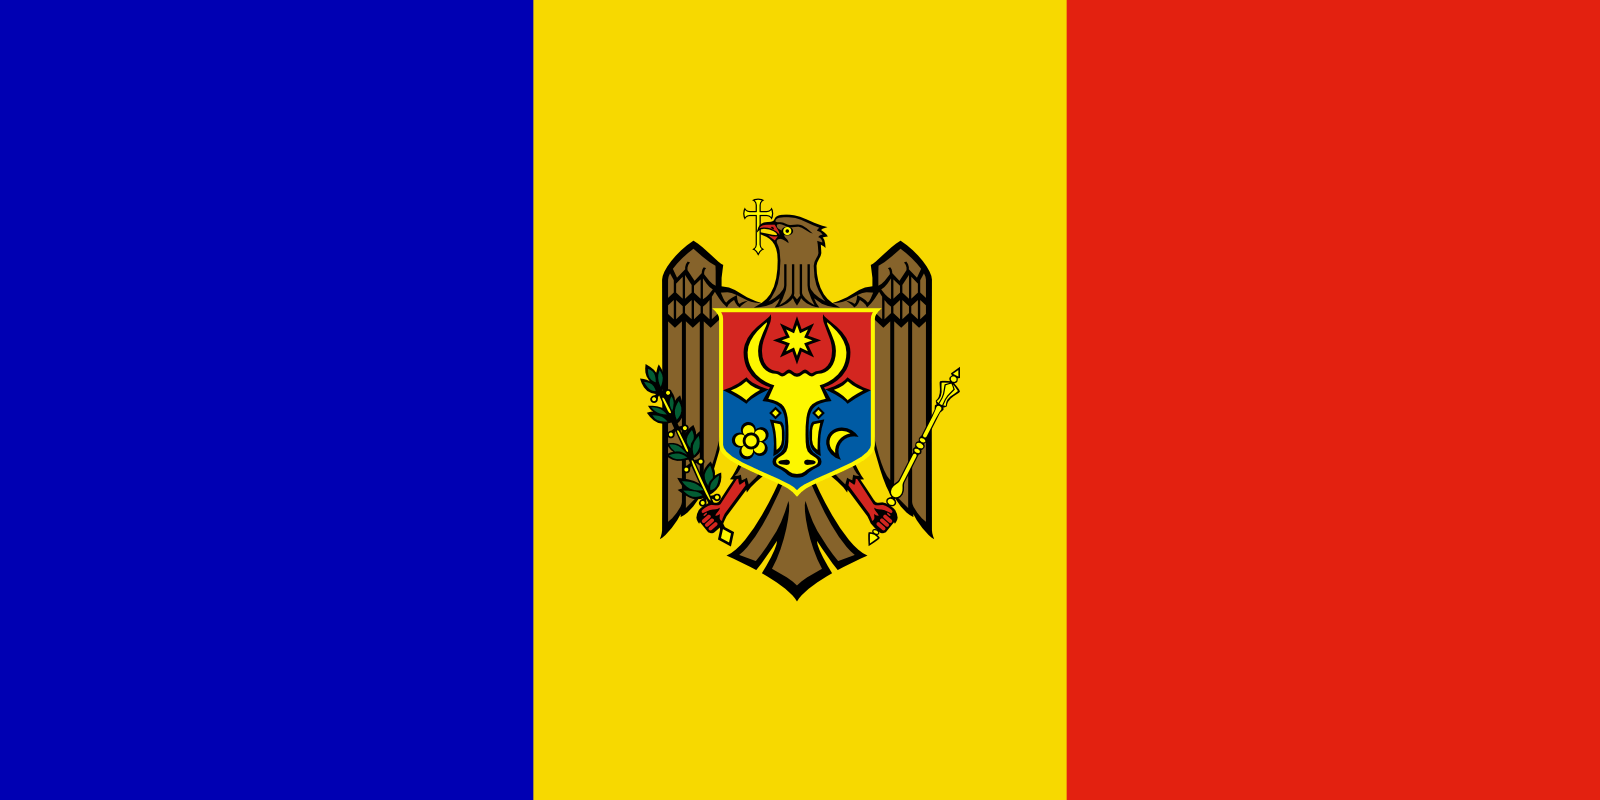 moldavia